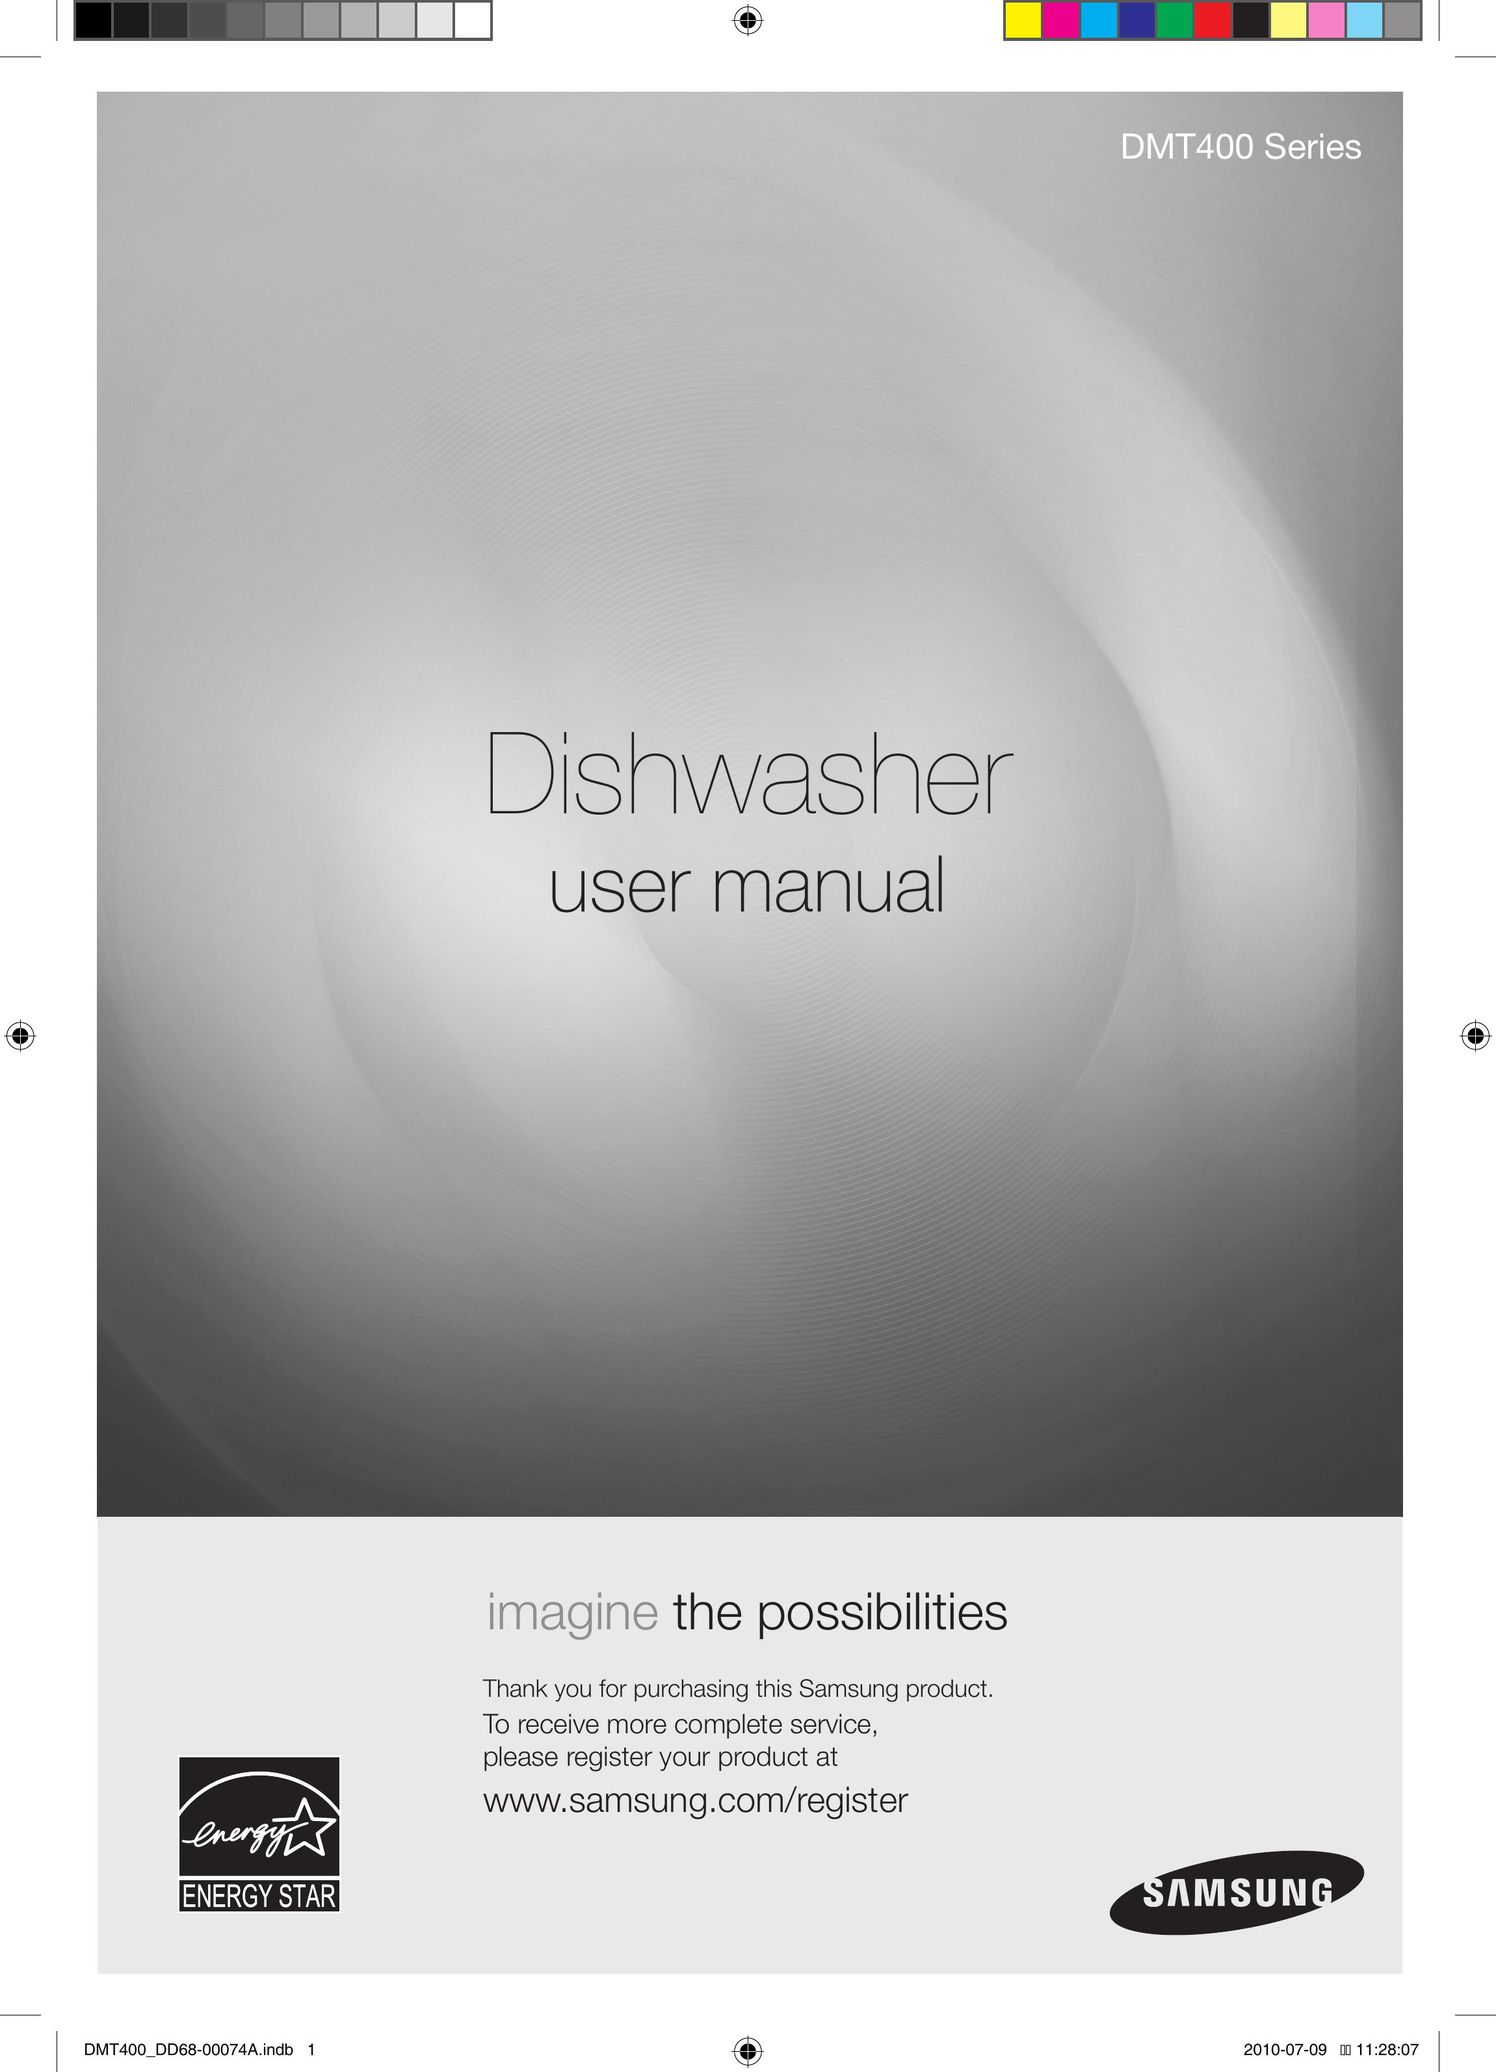 Samsung DMT400RHS Dishwasher User Manual